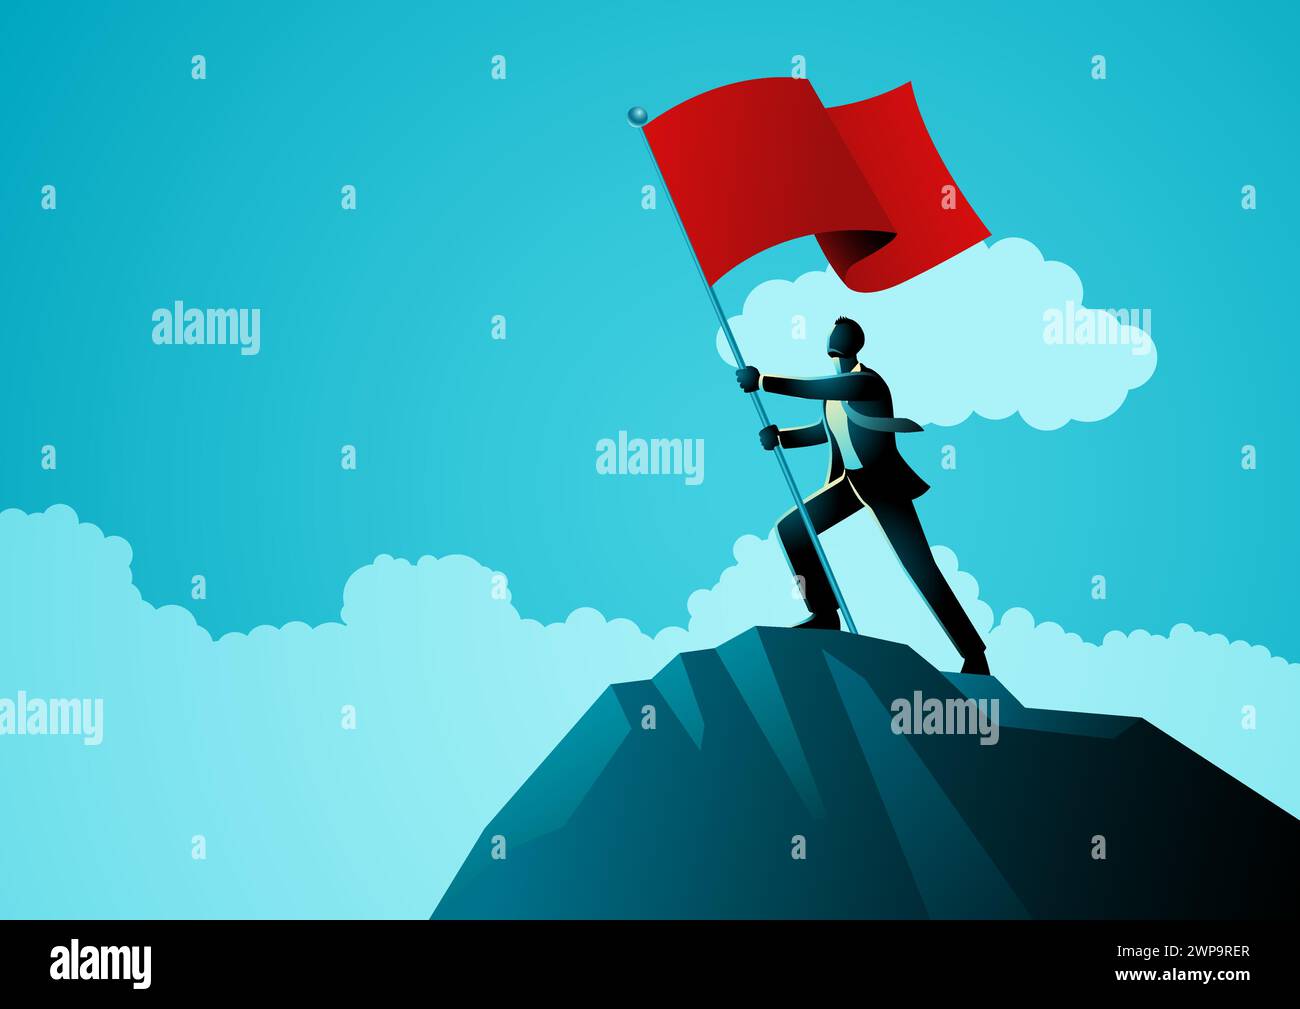 Illustration symbolique d'un homme d'affaires debout au sommet d'une montagne, levant un drapeau rouge, représente l'idiome des affaires pour lever des drapeaux rouges, par exemple pe Illustration de Vecteur